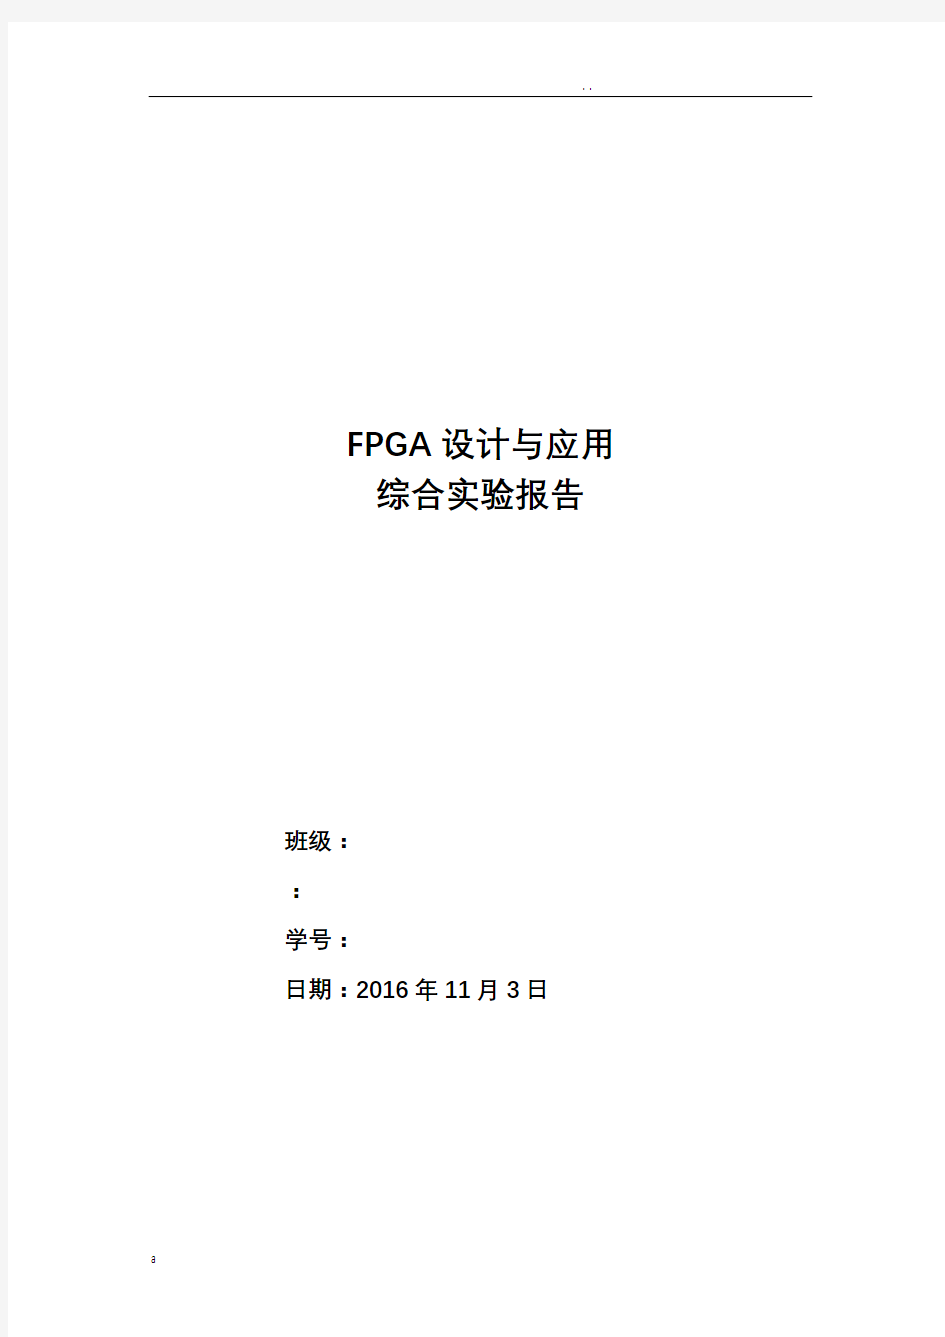 哈工大电信学院FPGA报告